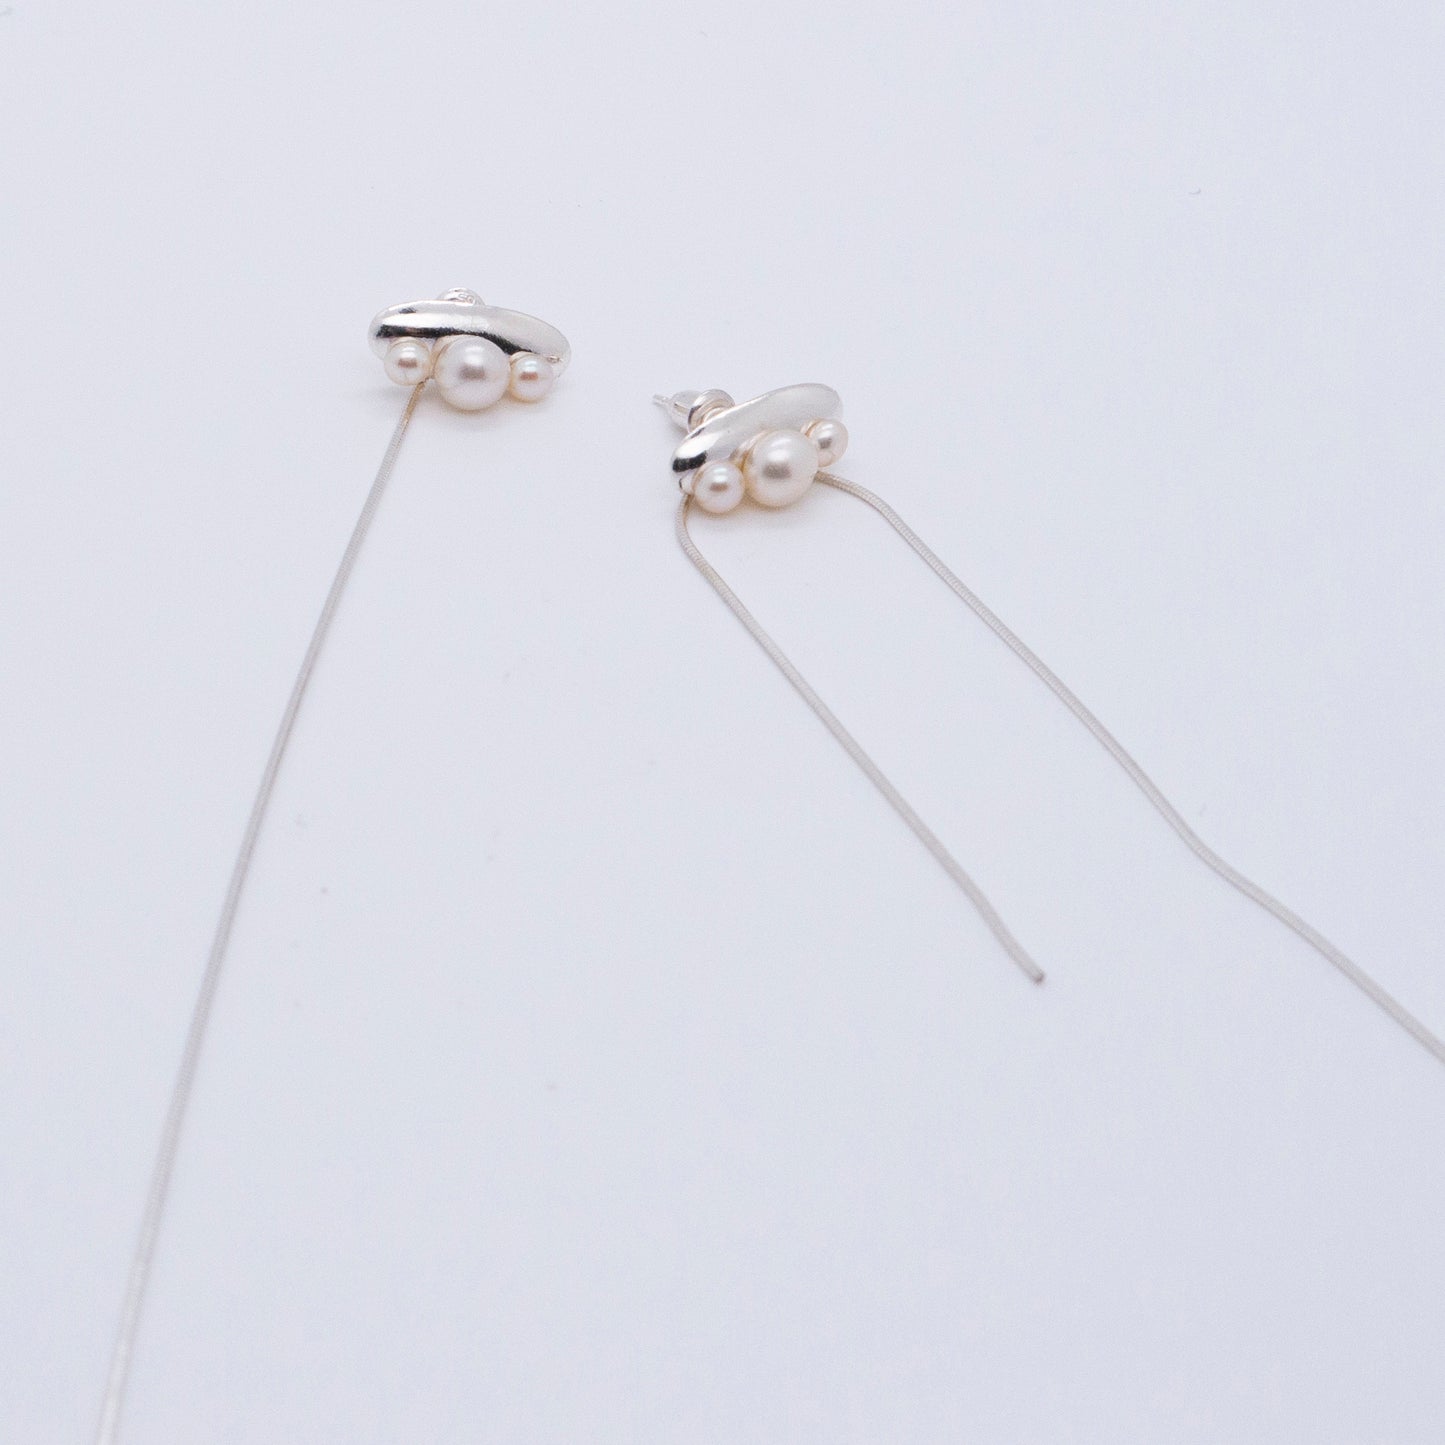 Multiverse - Time Travel Baby Pearl Earrings + Asymmetric Thread Earring Backs (Silver) 